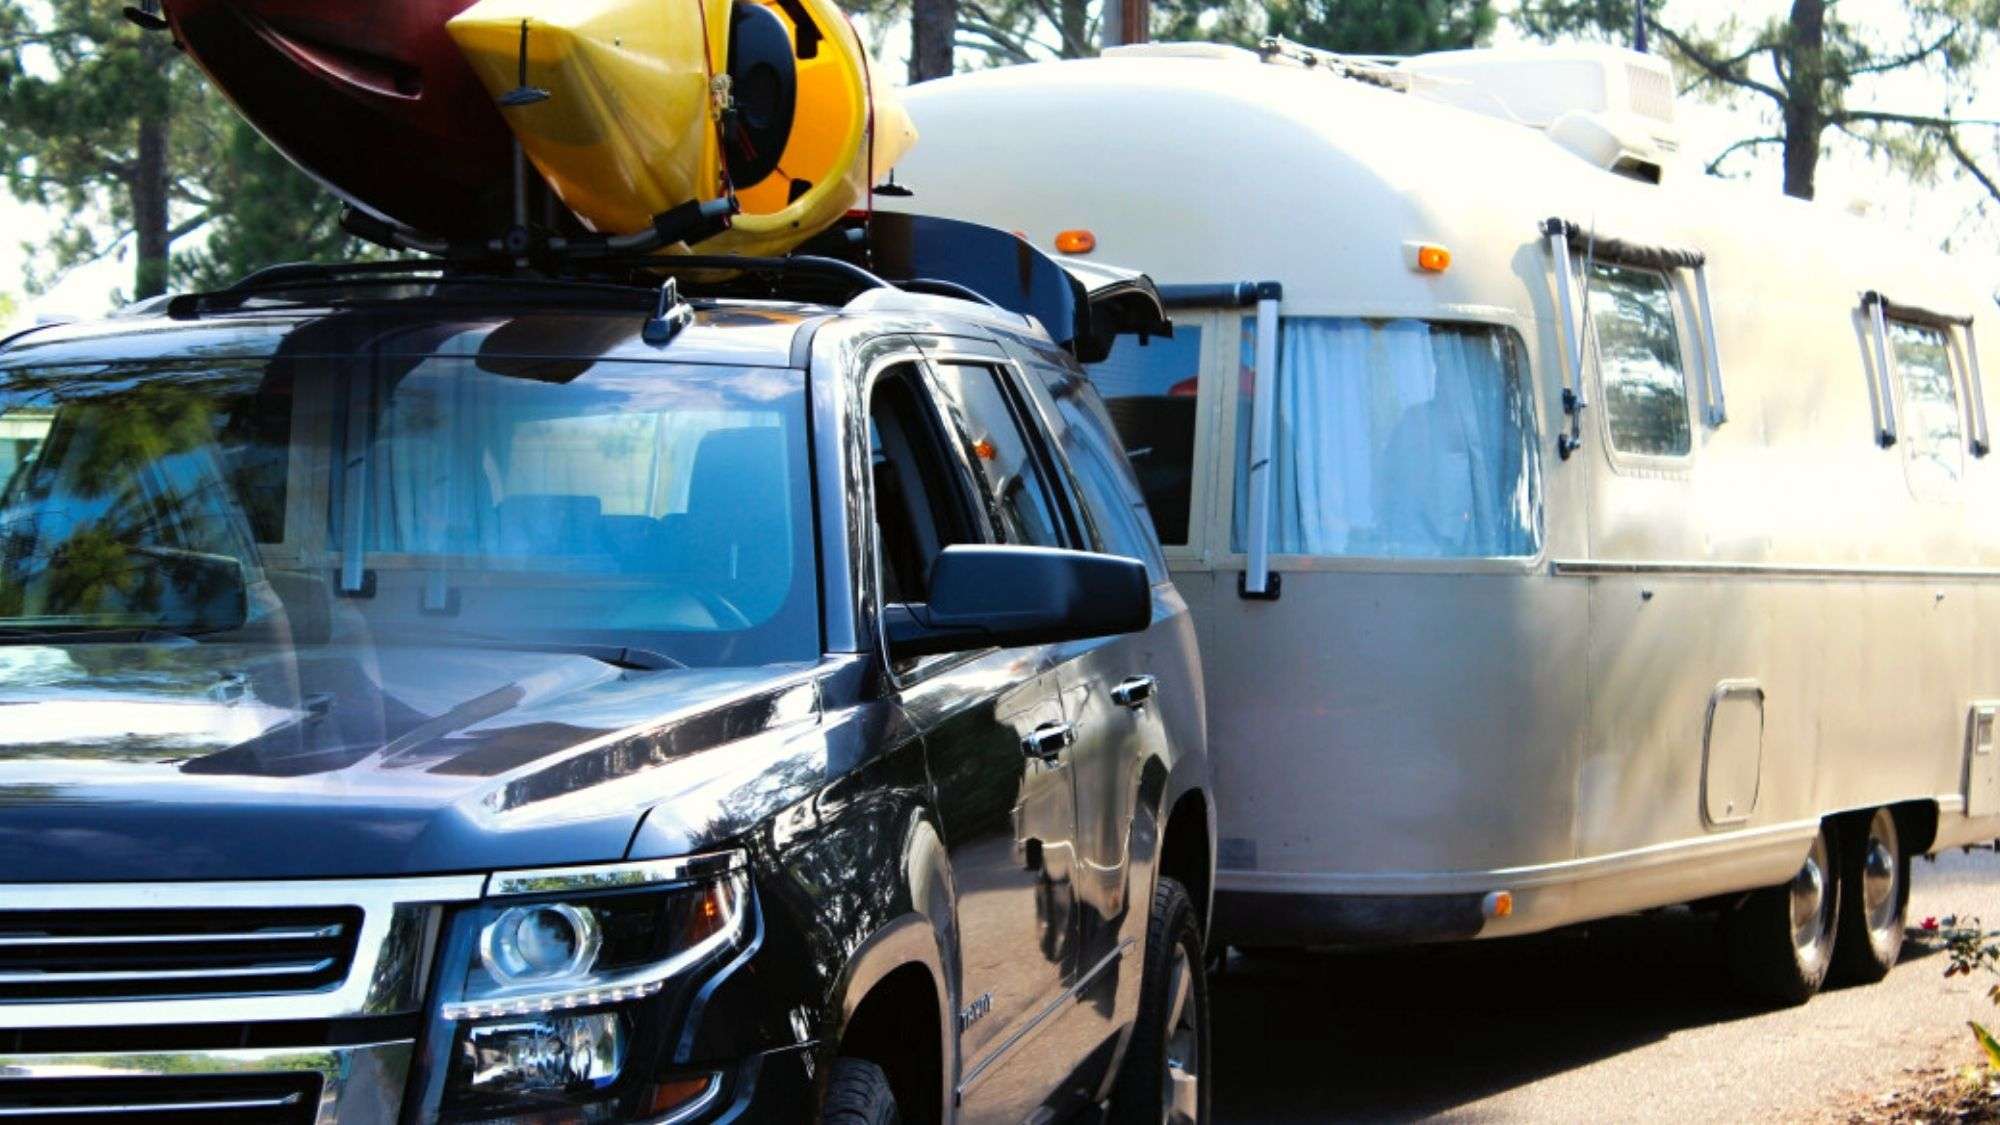 SUV towing RV camper